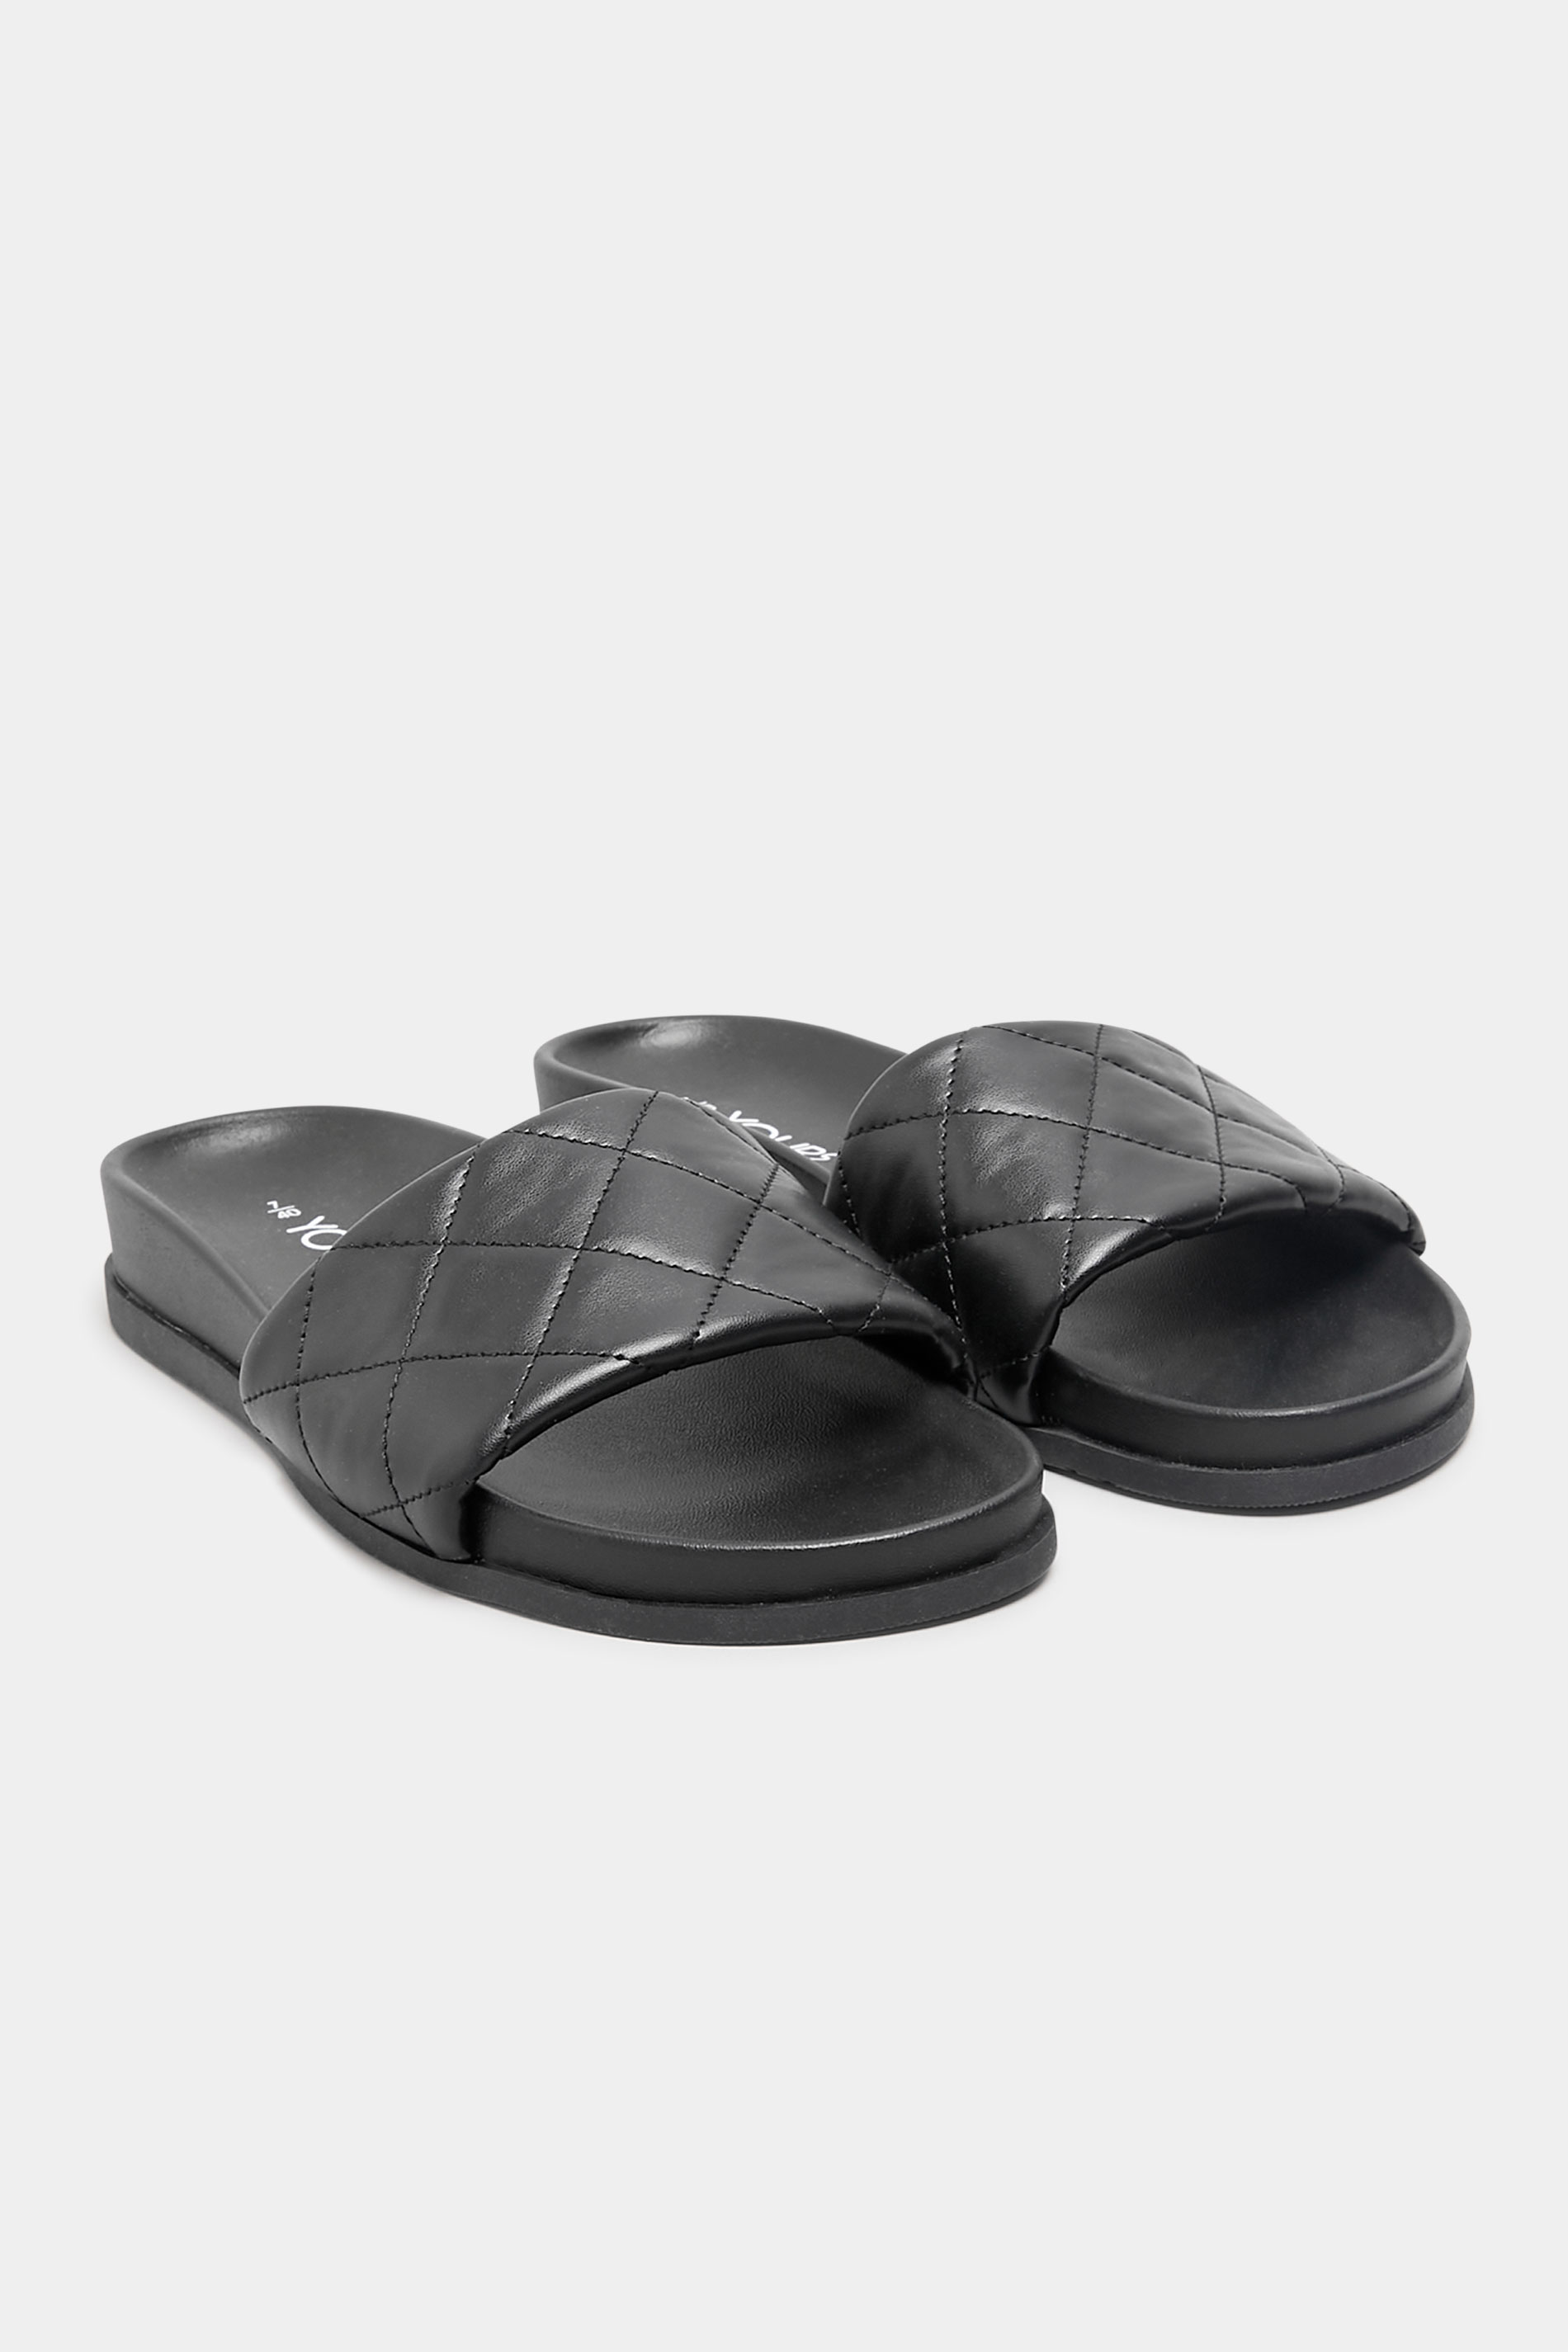 Chaussures Pieds Larges Sandales Pieds Larges | Sandales Noires Molletonnées Design Carreaux Pieds Extra Larges EEE - HX46655